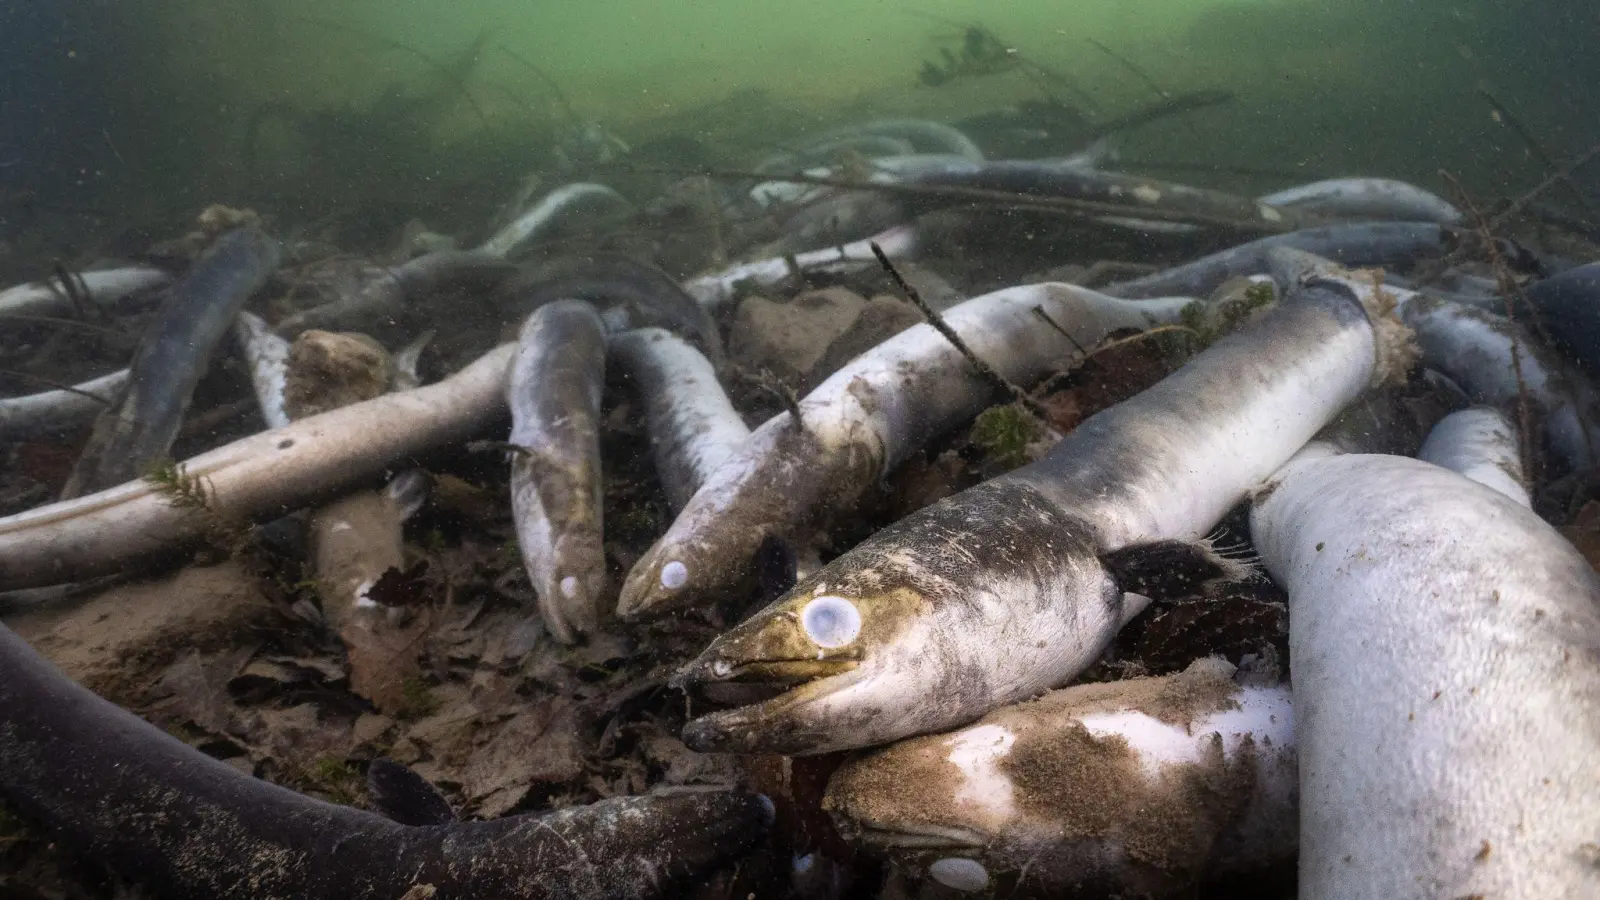 Mit erschreckenden Bildern von verstümmelten und verendeten Aalen prangert der Schweizerische Fischerei-Verband (SFV) das Tierleid im Hochrhein an. (Foto: Jonas Steiner/Schweizerischer Fischerei- Verband/dpa)